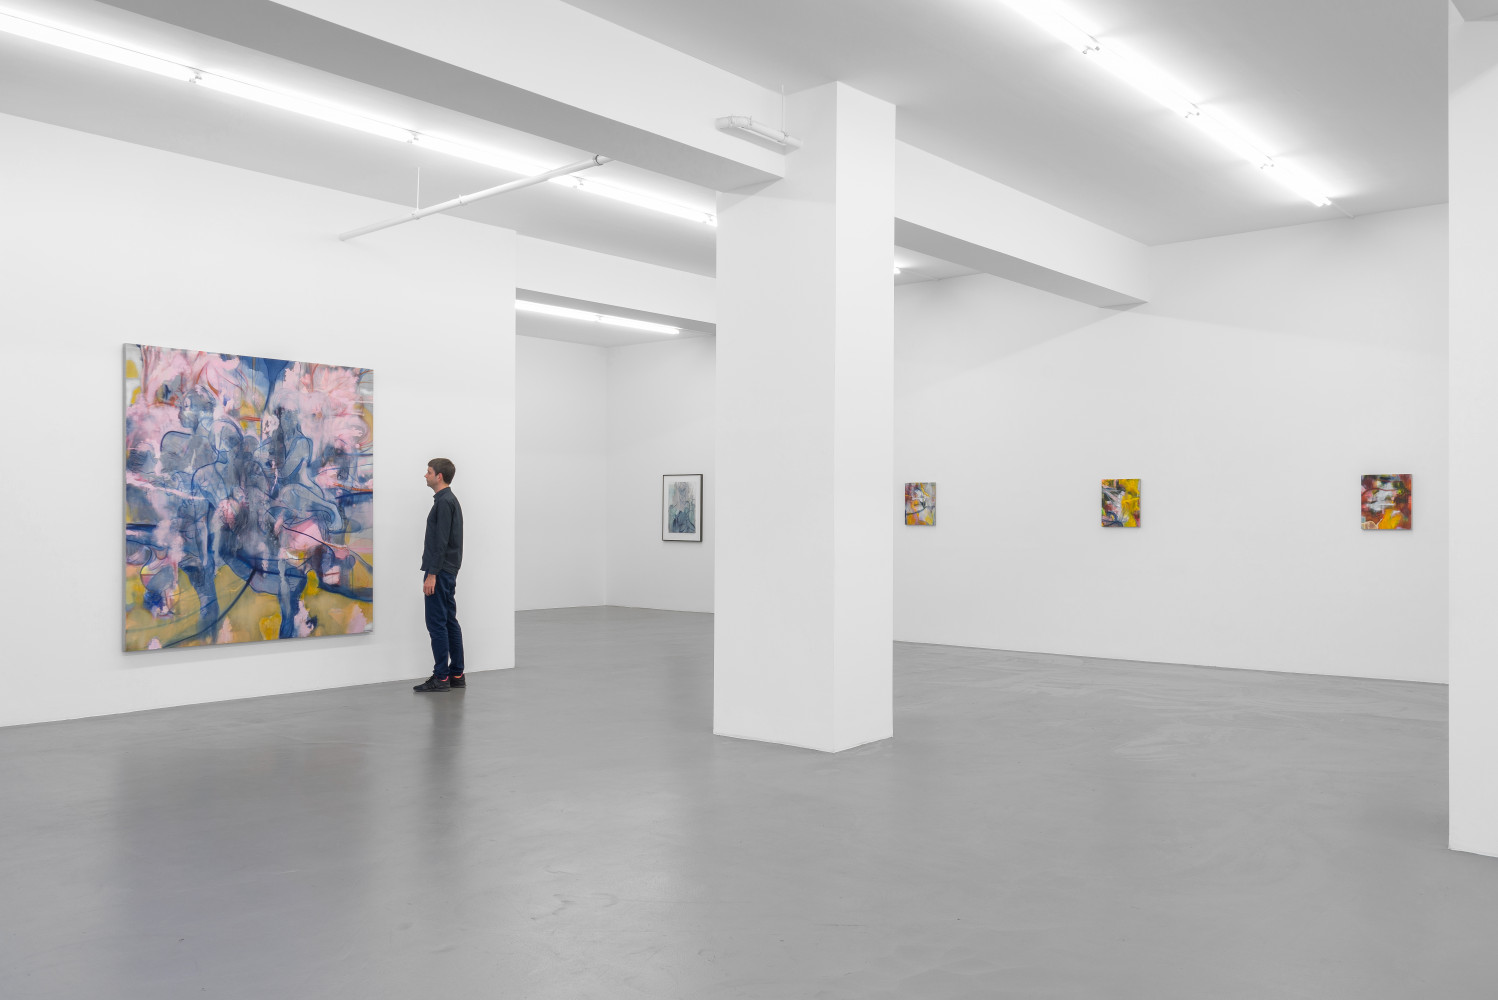 Nigel Cooke, ‘Nigel Cooke – Spring in Fialta’, Installationsansicht, Buchmann Galerie, 2019